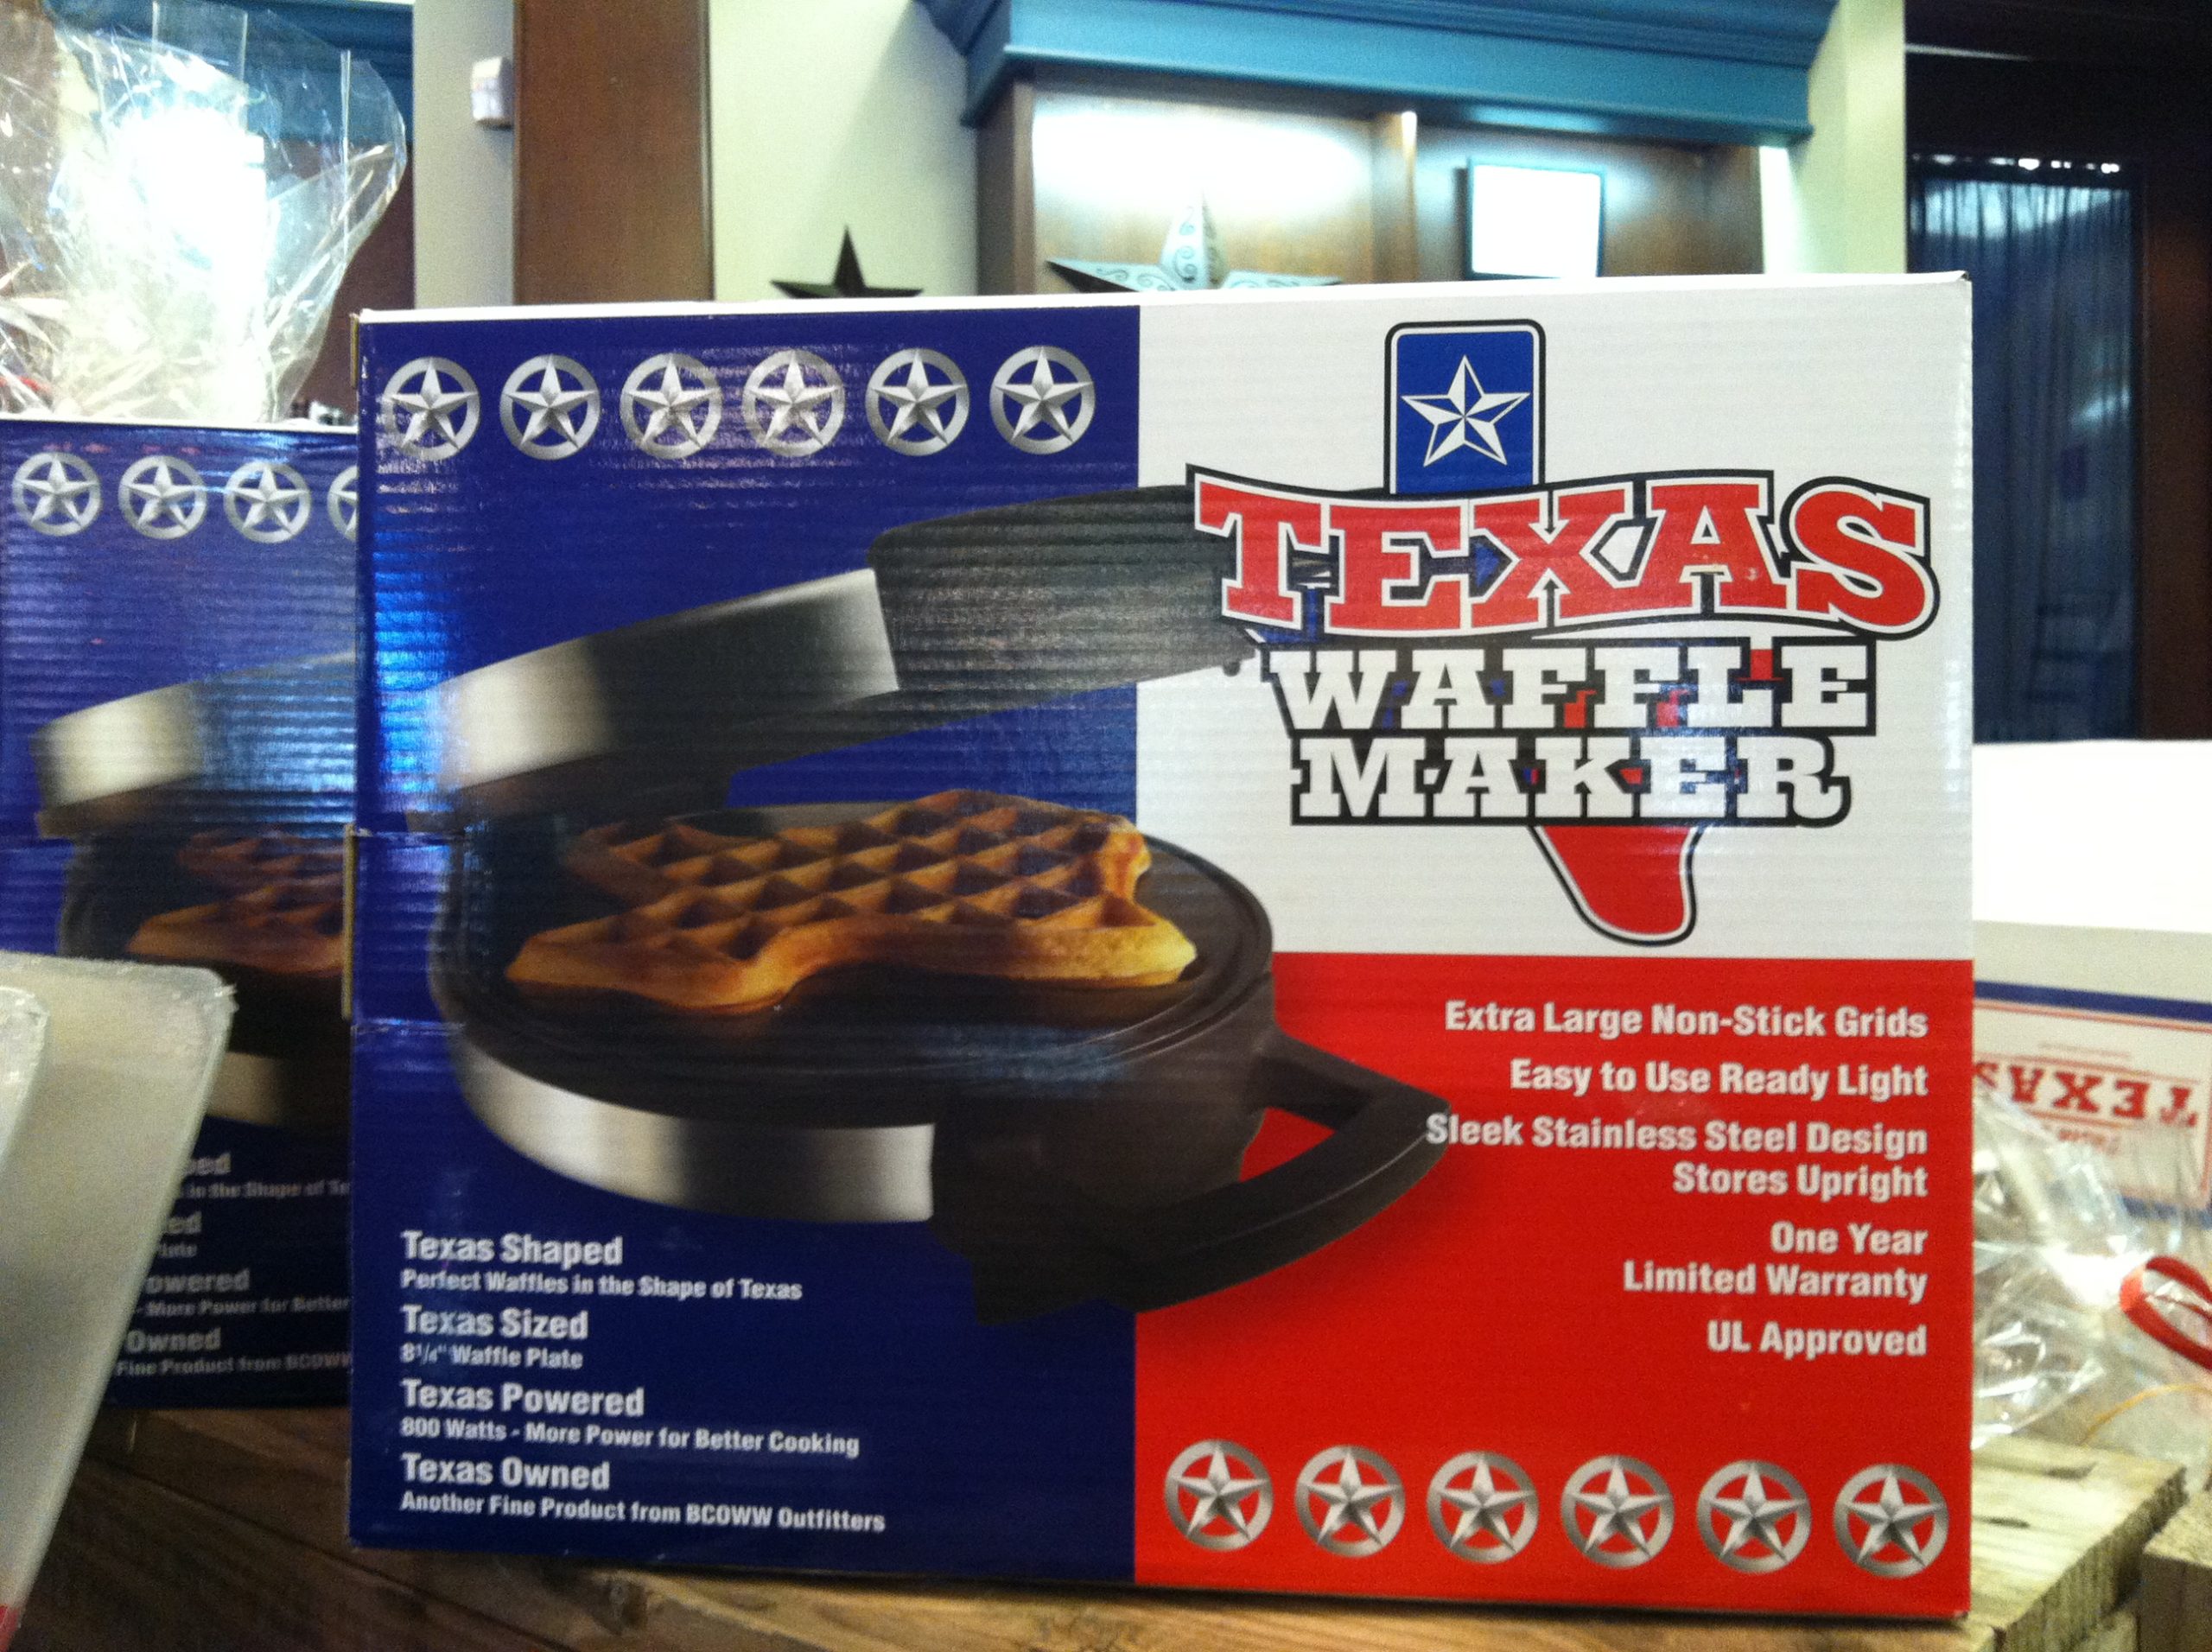 https://texasstartrading.com/wp-content/uploads/2020/06/waffle-maker-box-scaled.jpg